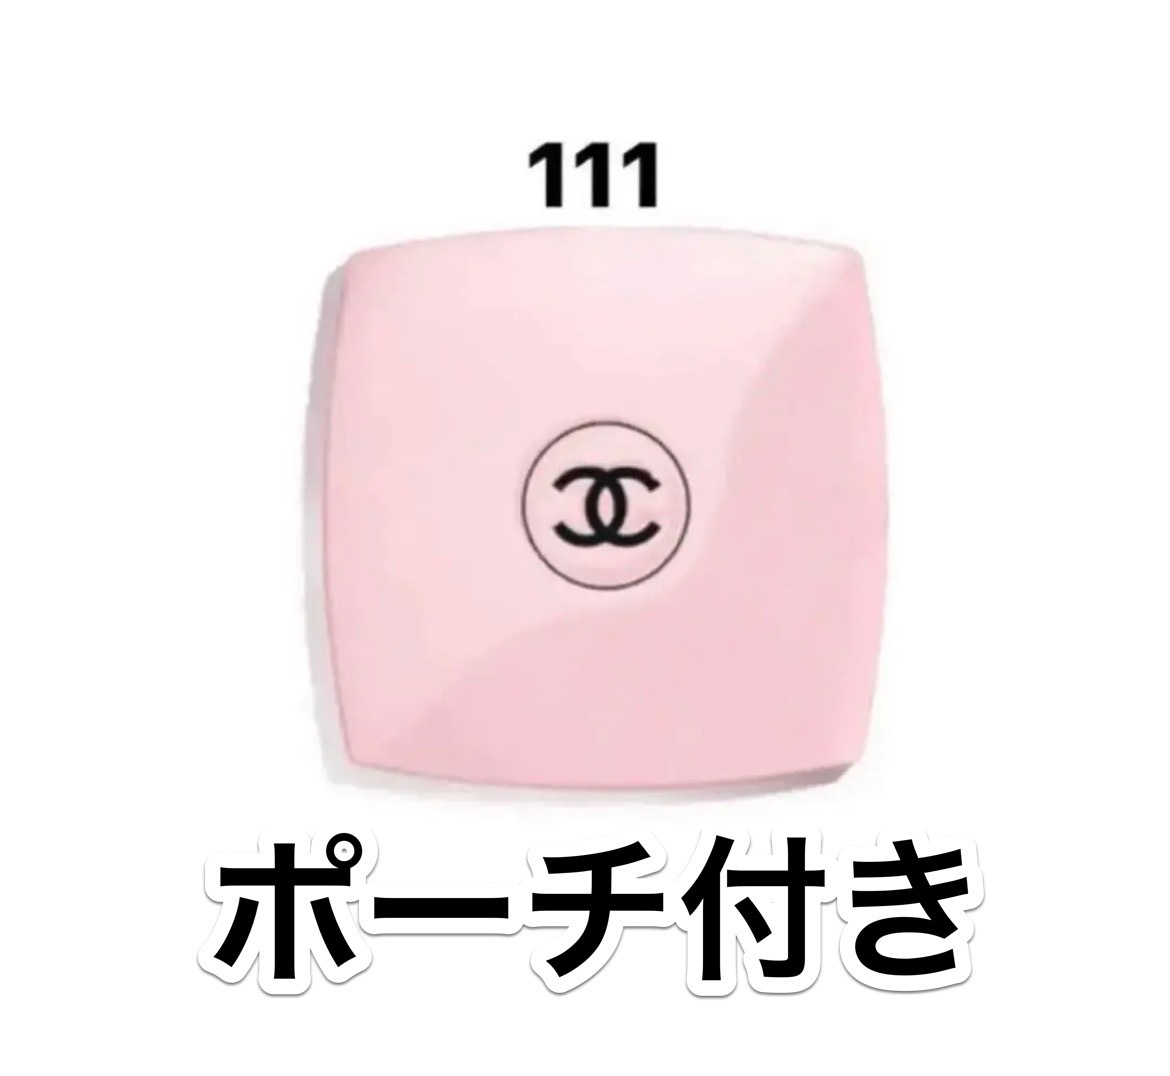 CHANEL シャネル コンパクト ミラー バレリーナ 111 ピンク